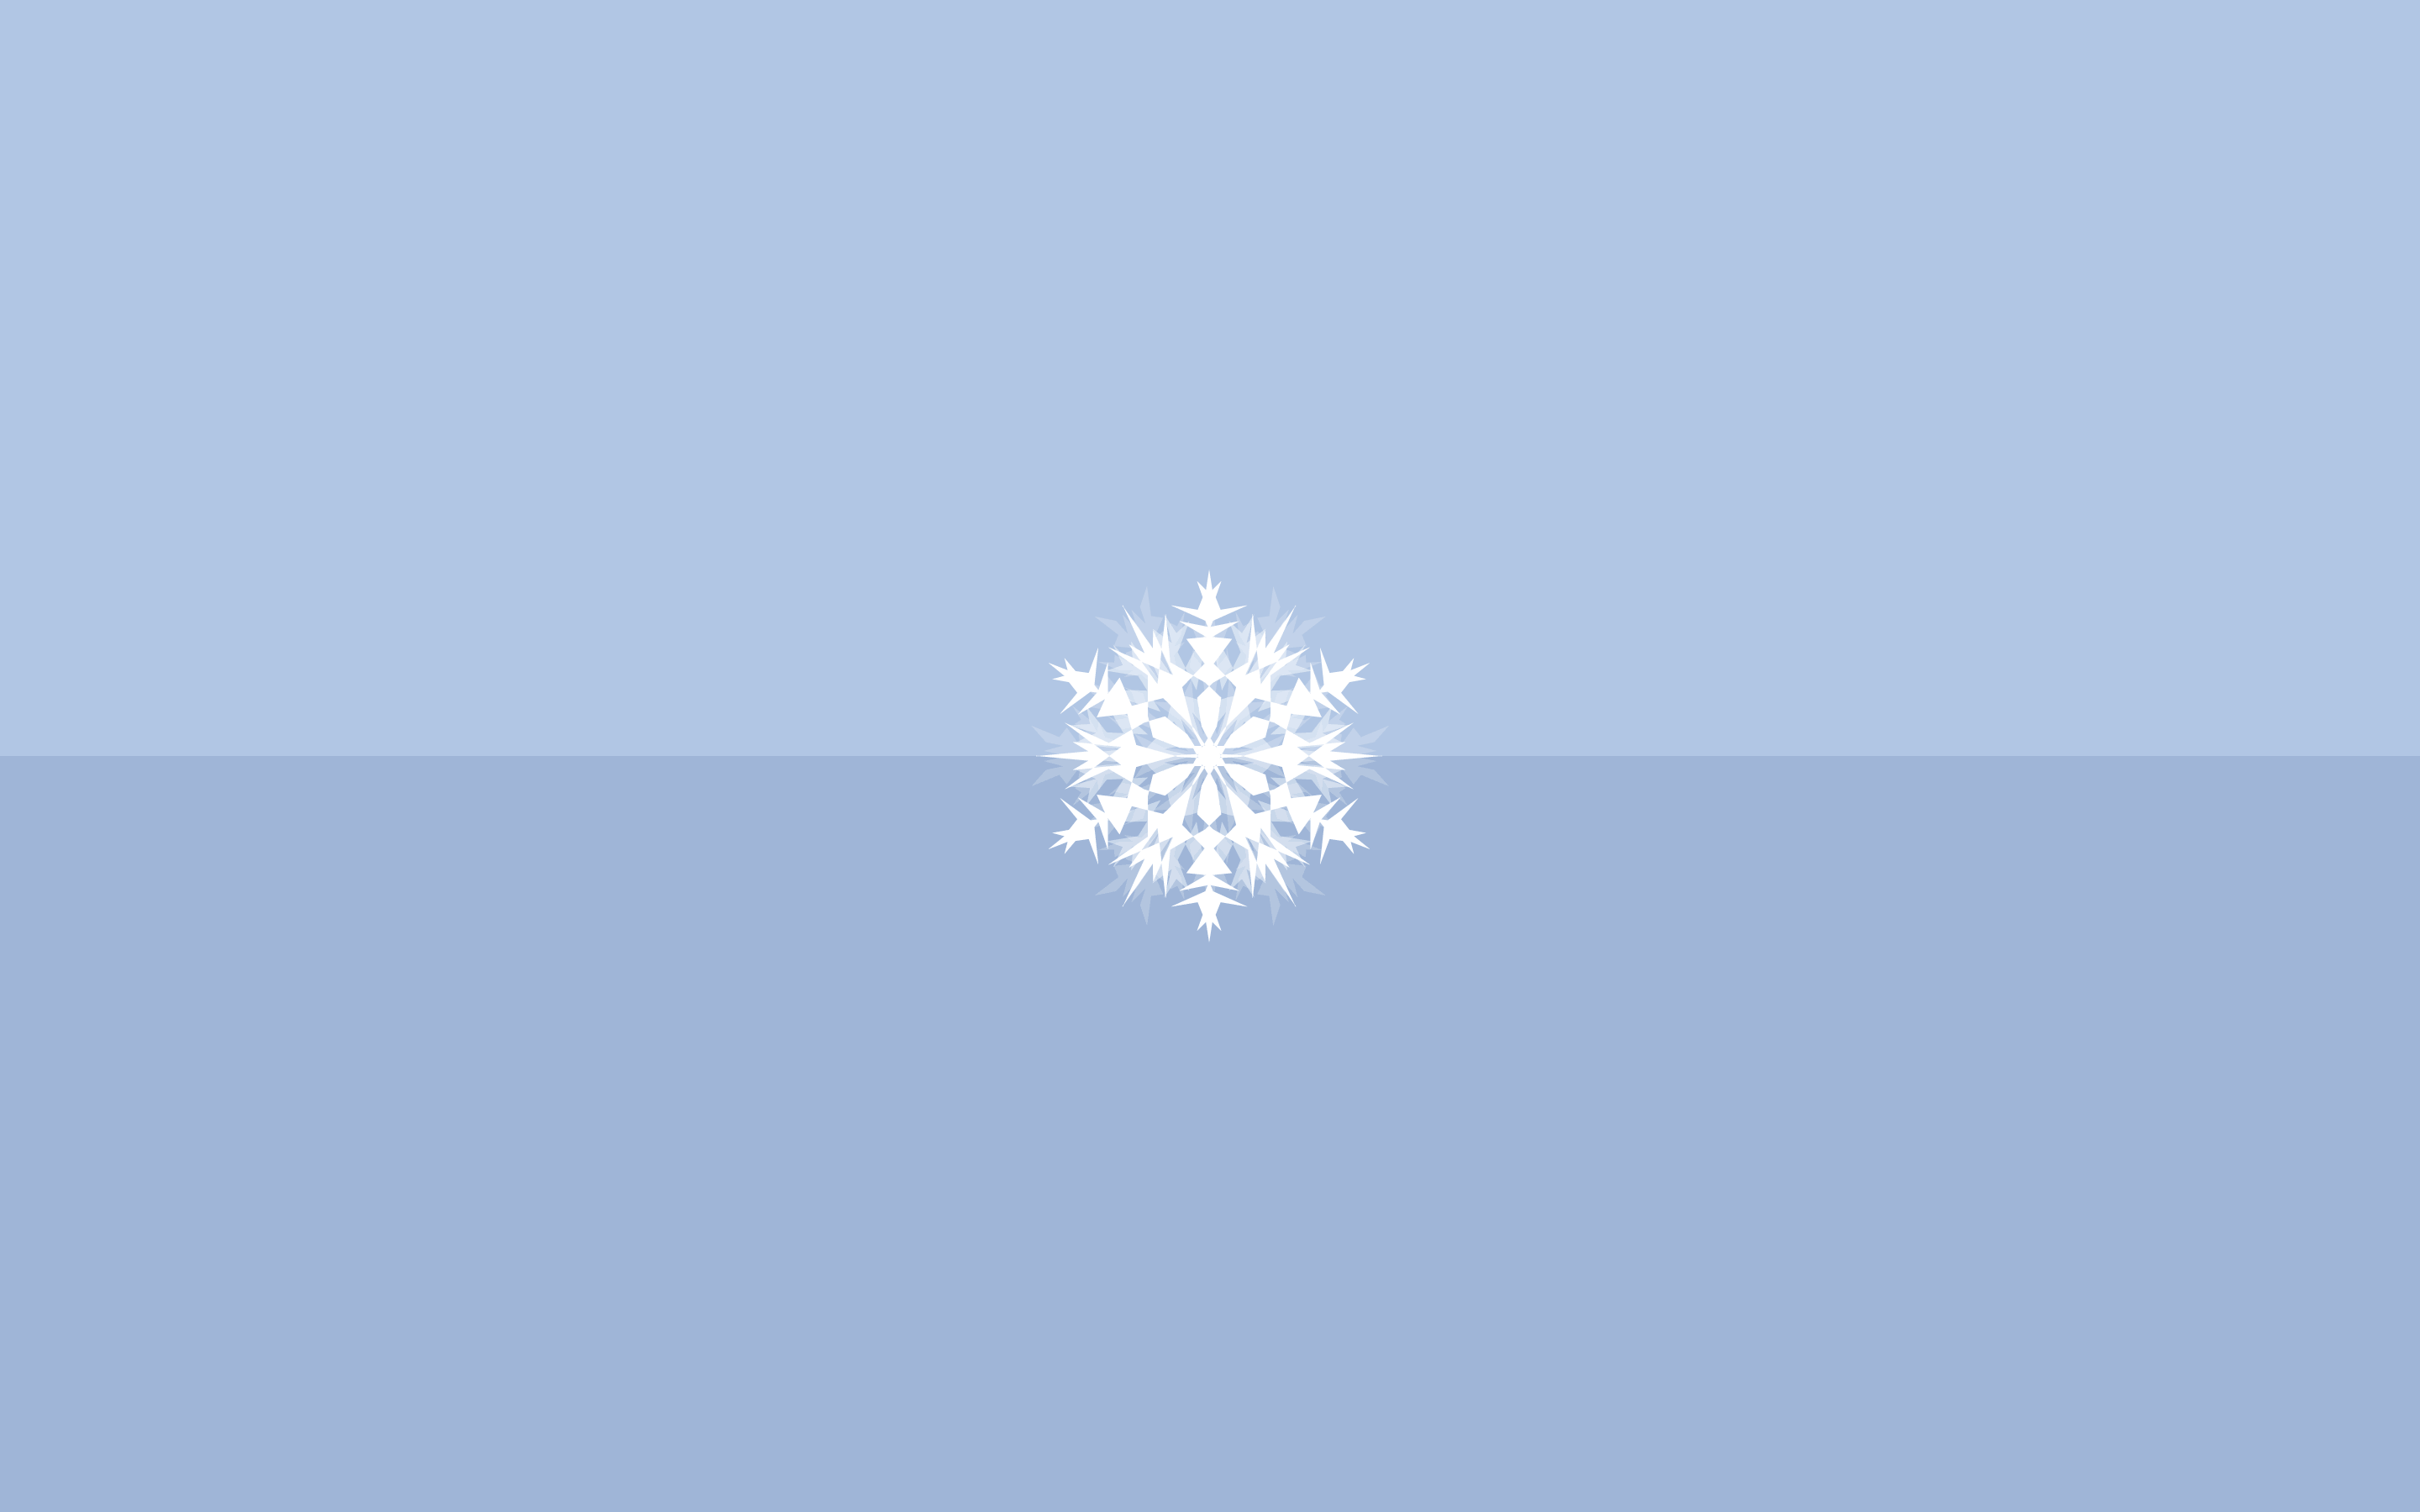 winter theme + snowflake. Winter wallpaper desktop, Snowflake wallpaper, Minimalist wallpaper